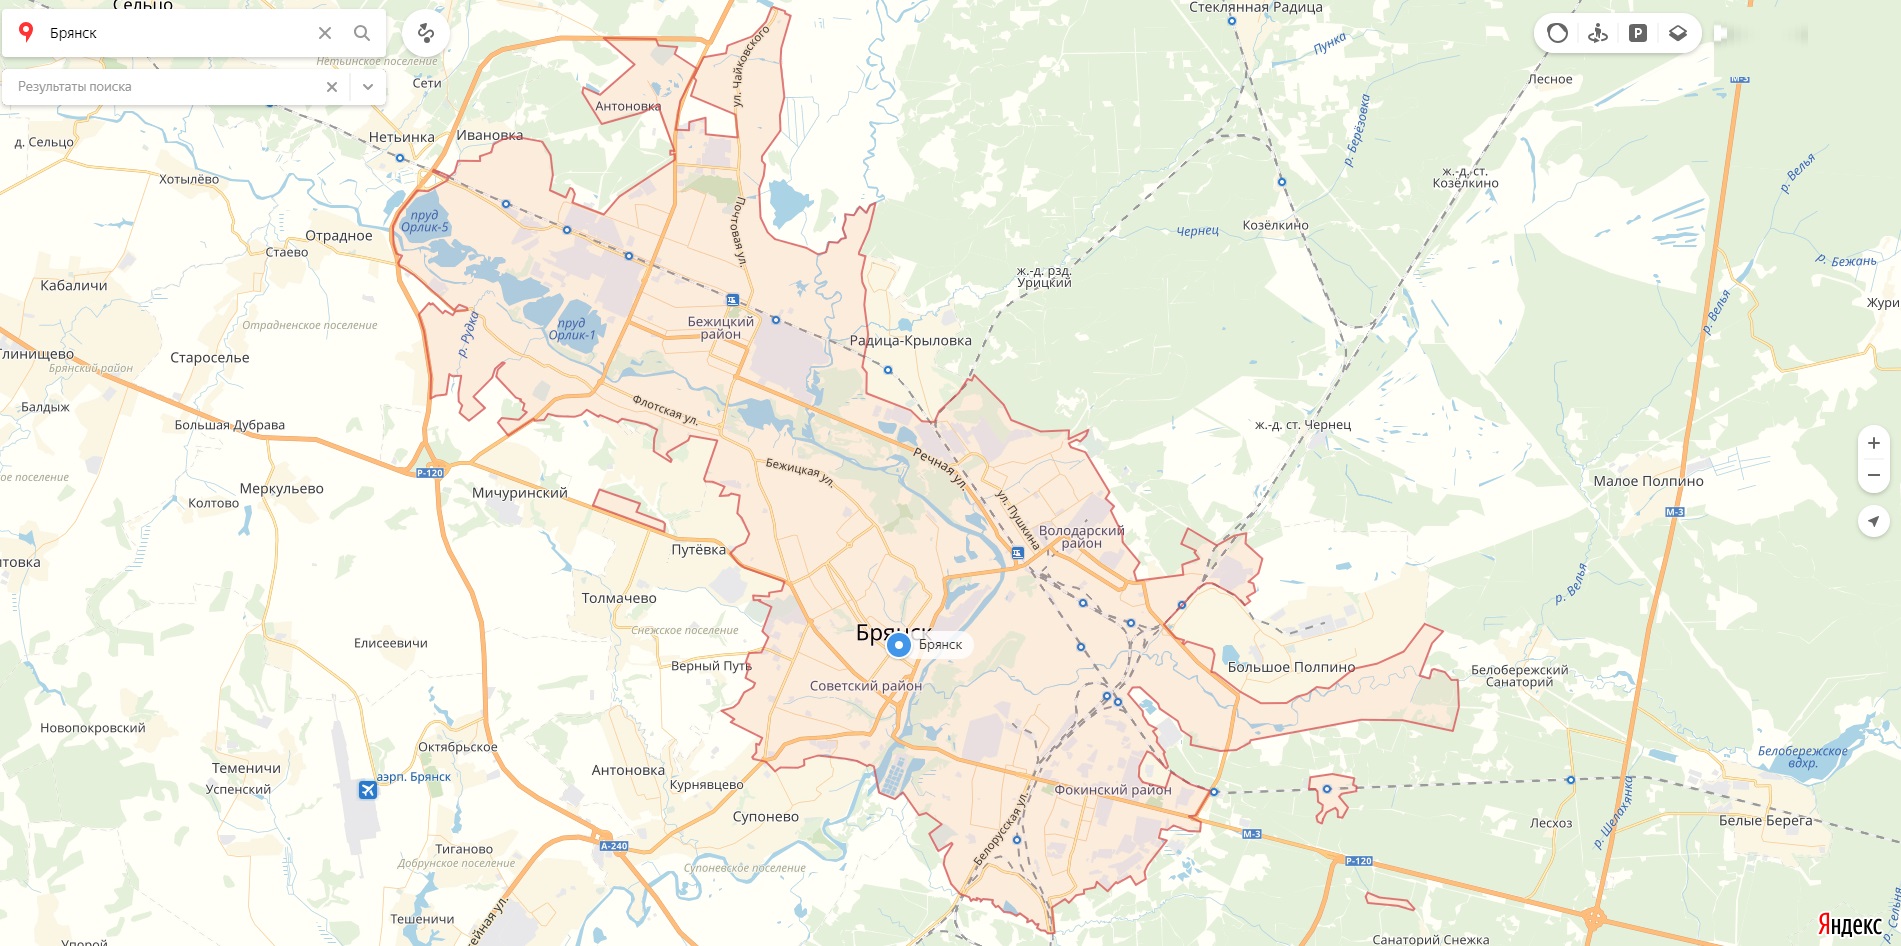 Карта новокузнецка с улицами и домами подробно 2 гис онлайн бесплатно